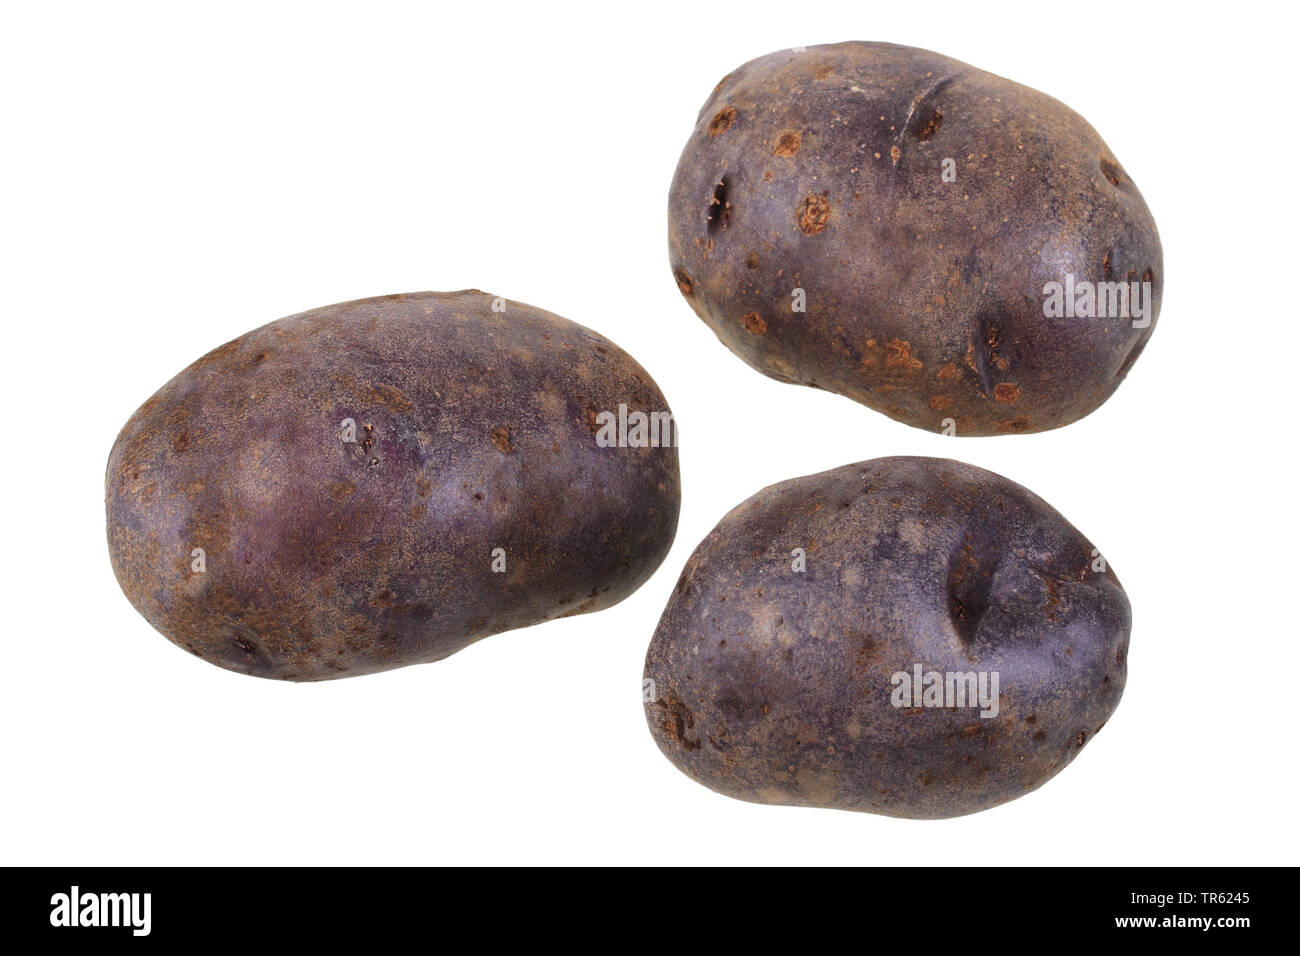 potato (Solanum tuberosum Blauer Schwede), potatoes of cultivar Blauer Schwede, cutout Stock Photo